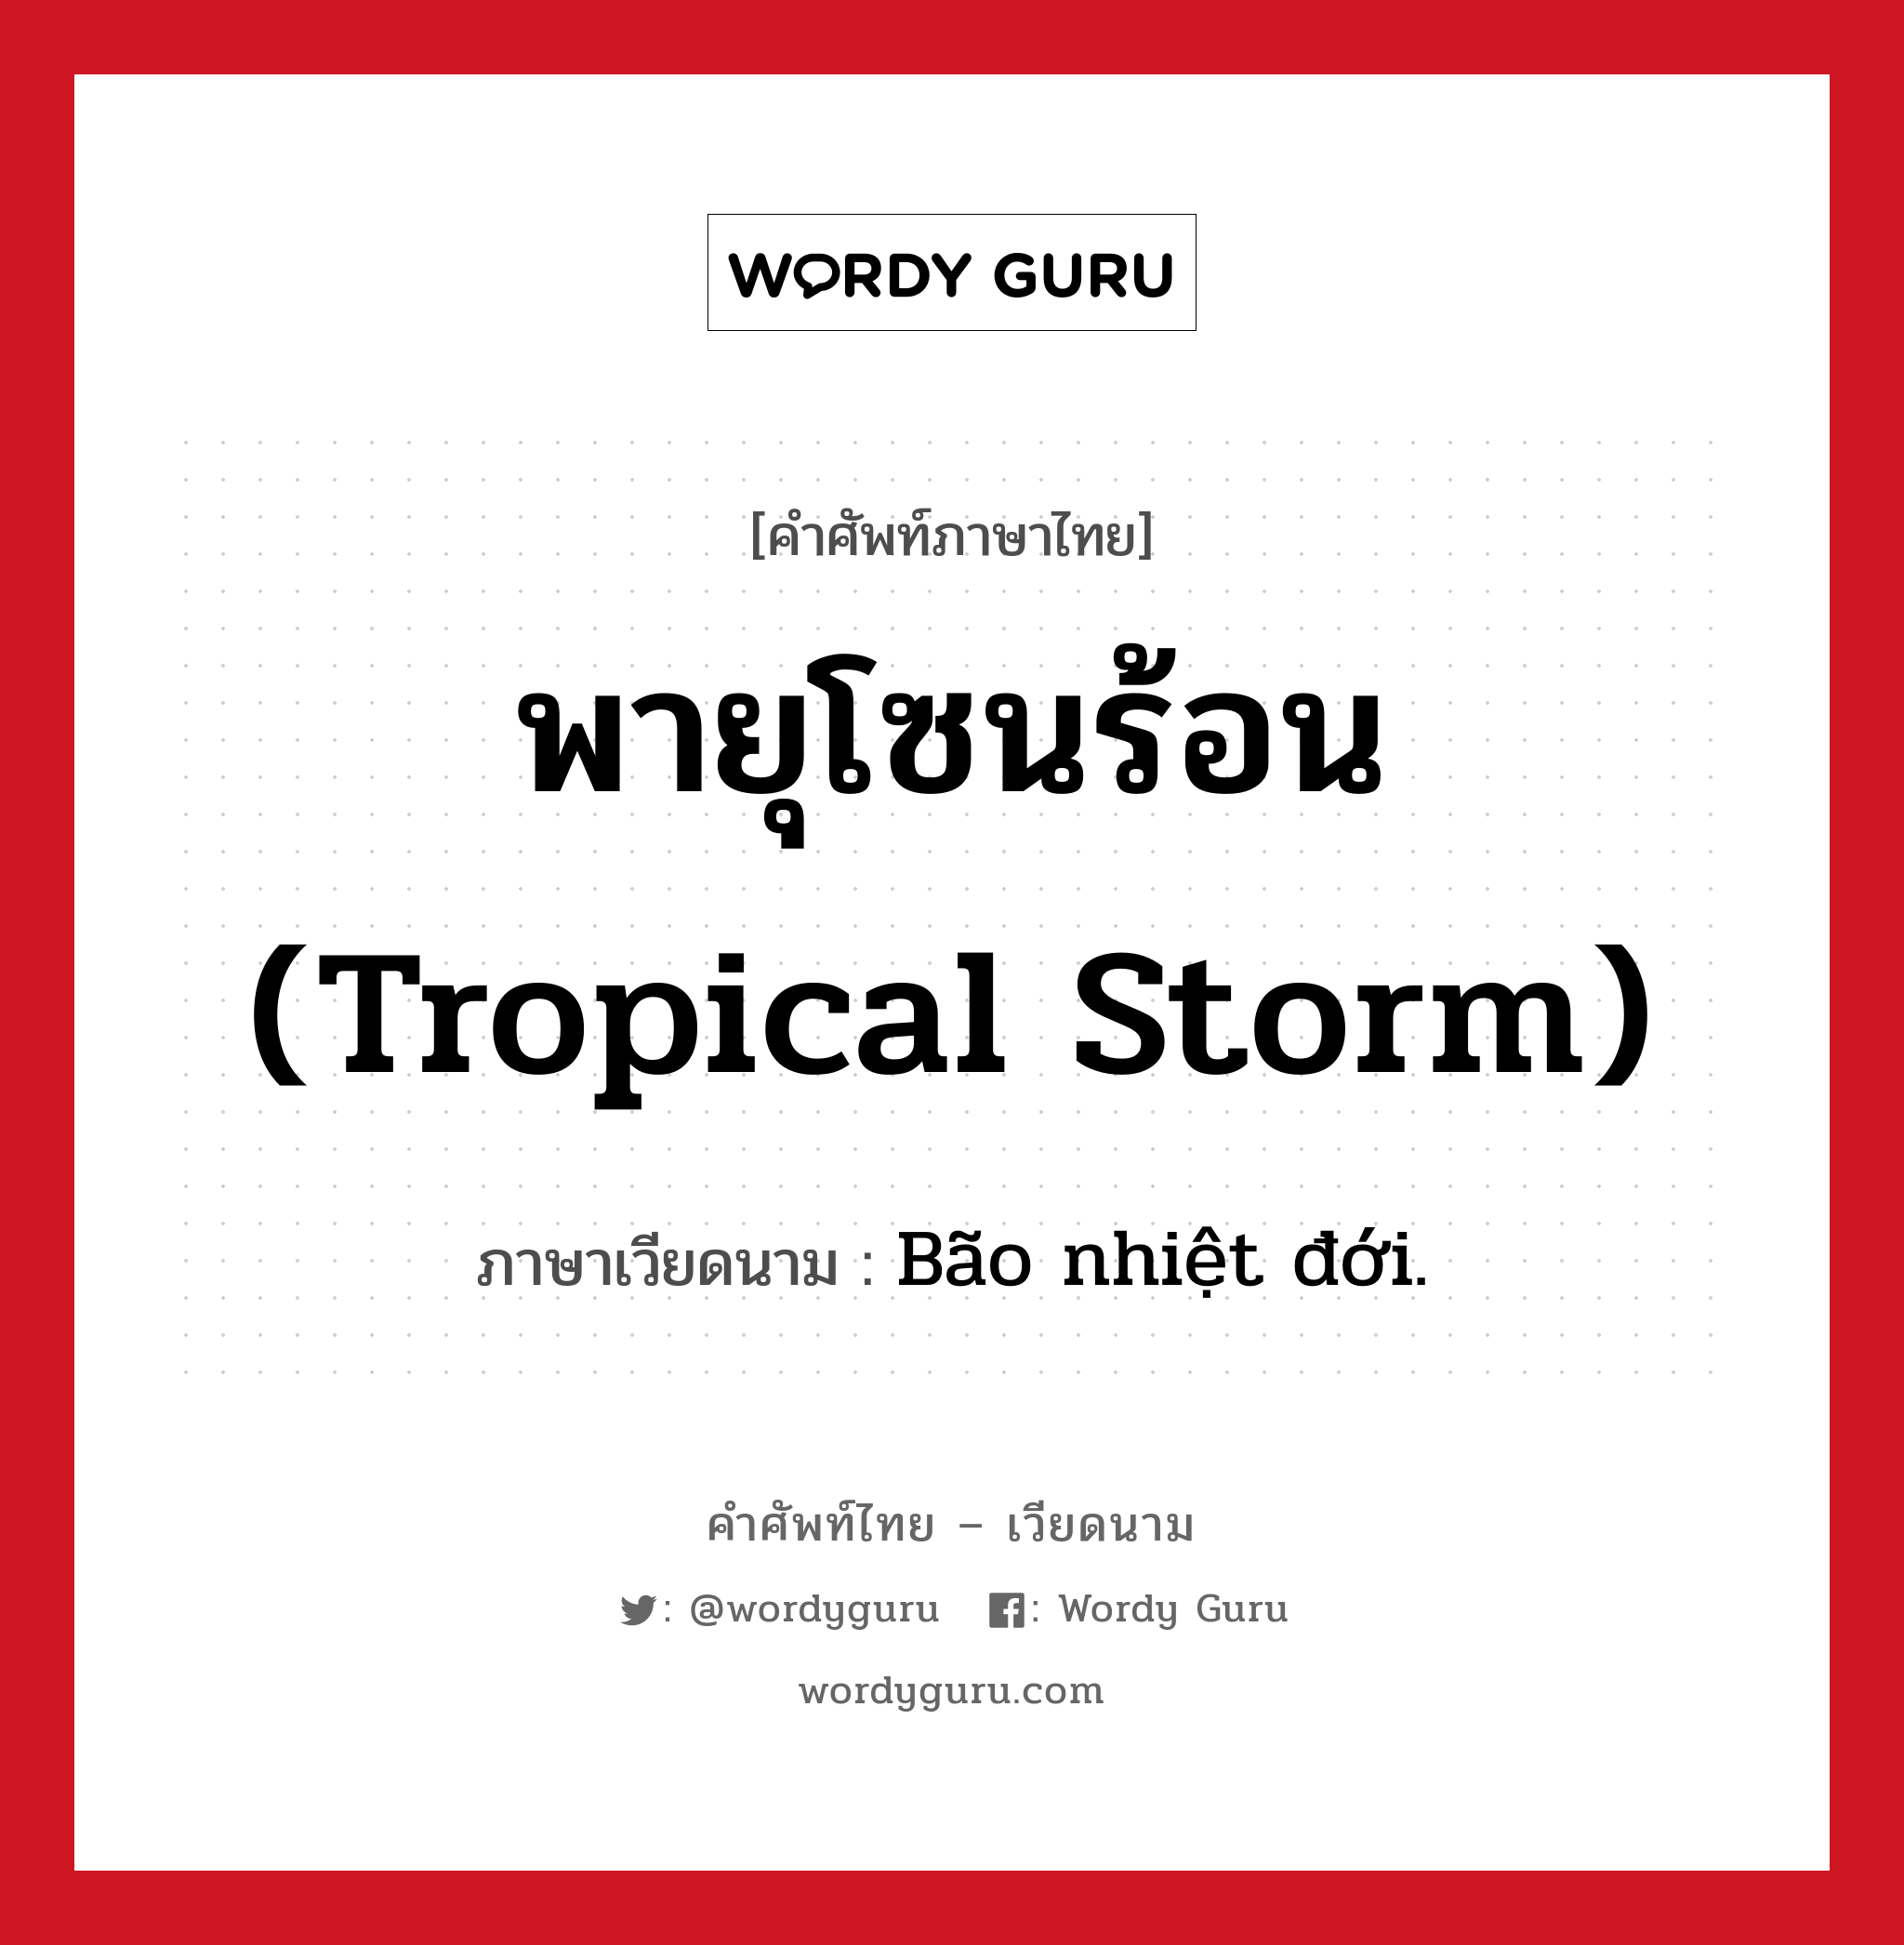 พายุโซนร้อน (tropical storm) ภาษาเวียดนามคืออะไร, คำศัพท์ภาษาไทย - เวียดนาม พายุโซนร้อน (tropical storm) ภาษาเวียดนาม Bão nhiệt đới. หมวด สภาพอากาศ หมวด สภาพอากาศ